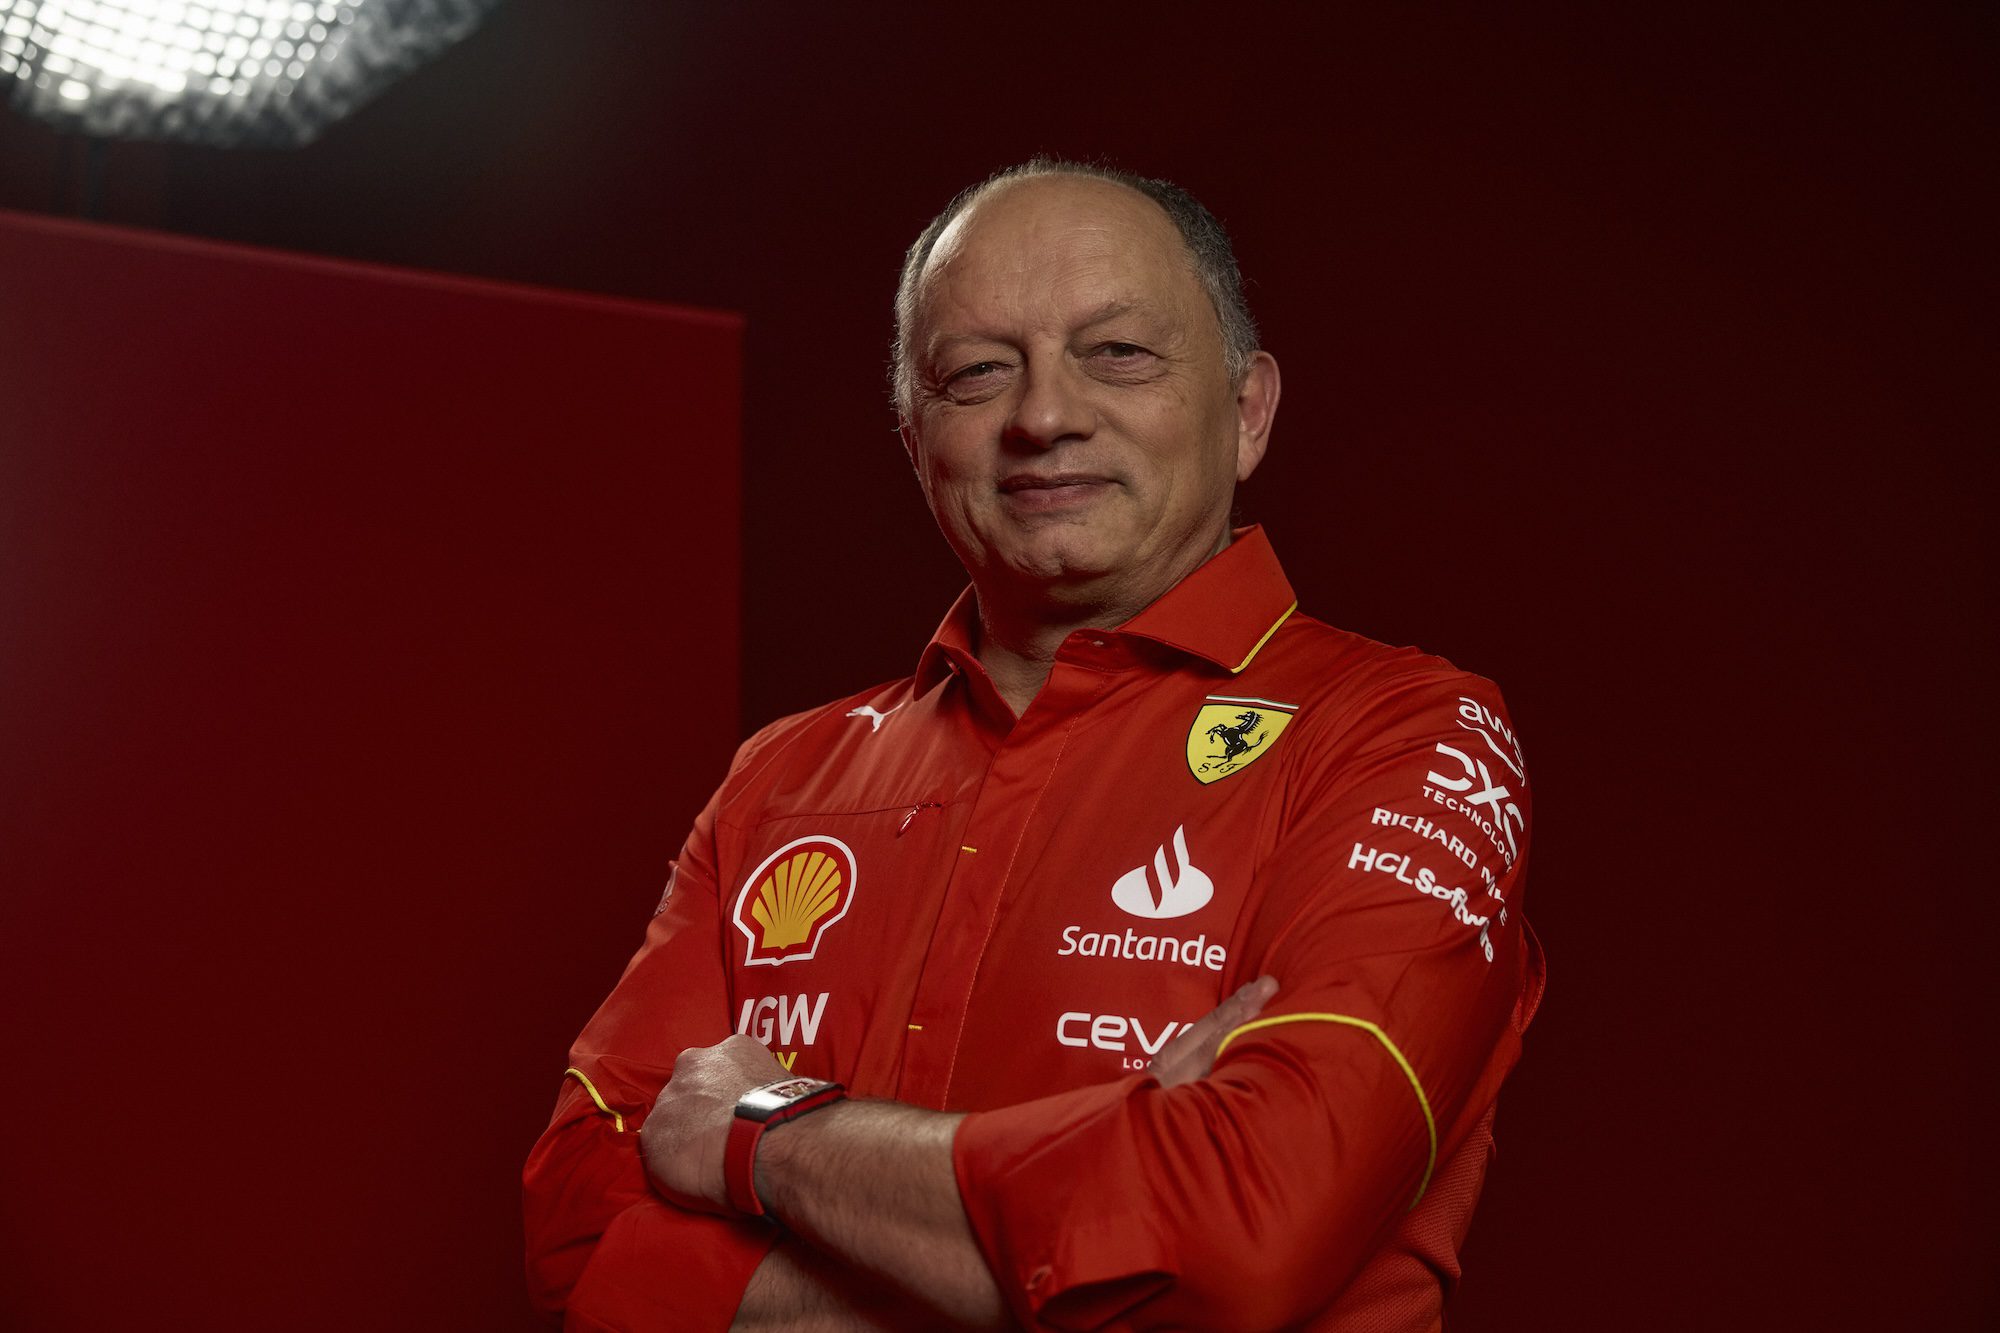 F1: Ferrari empolgada, mas Vasseur mantém cautela